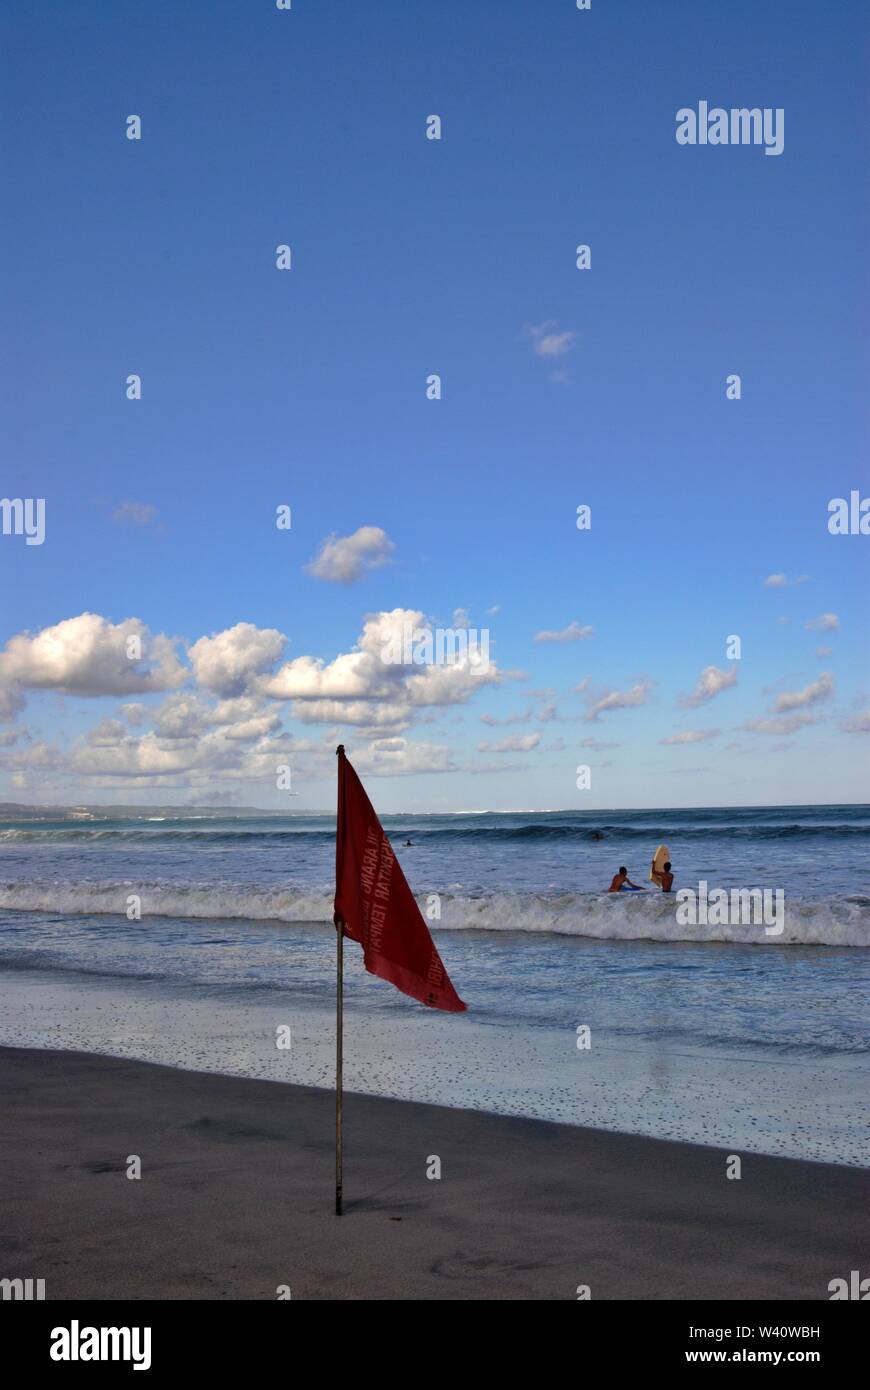 La spiaggia di Kuta Beach, Bali, Indonesia - Giugno 2019 : persone giocare su una spiaggia con un contrassegno di sicurezza. Foto Stock